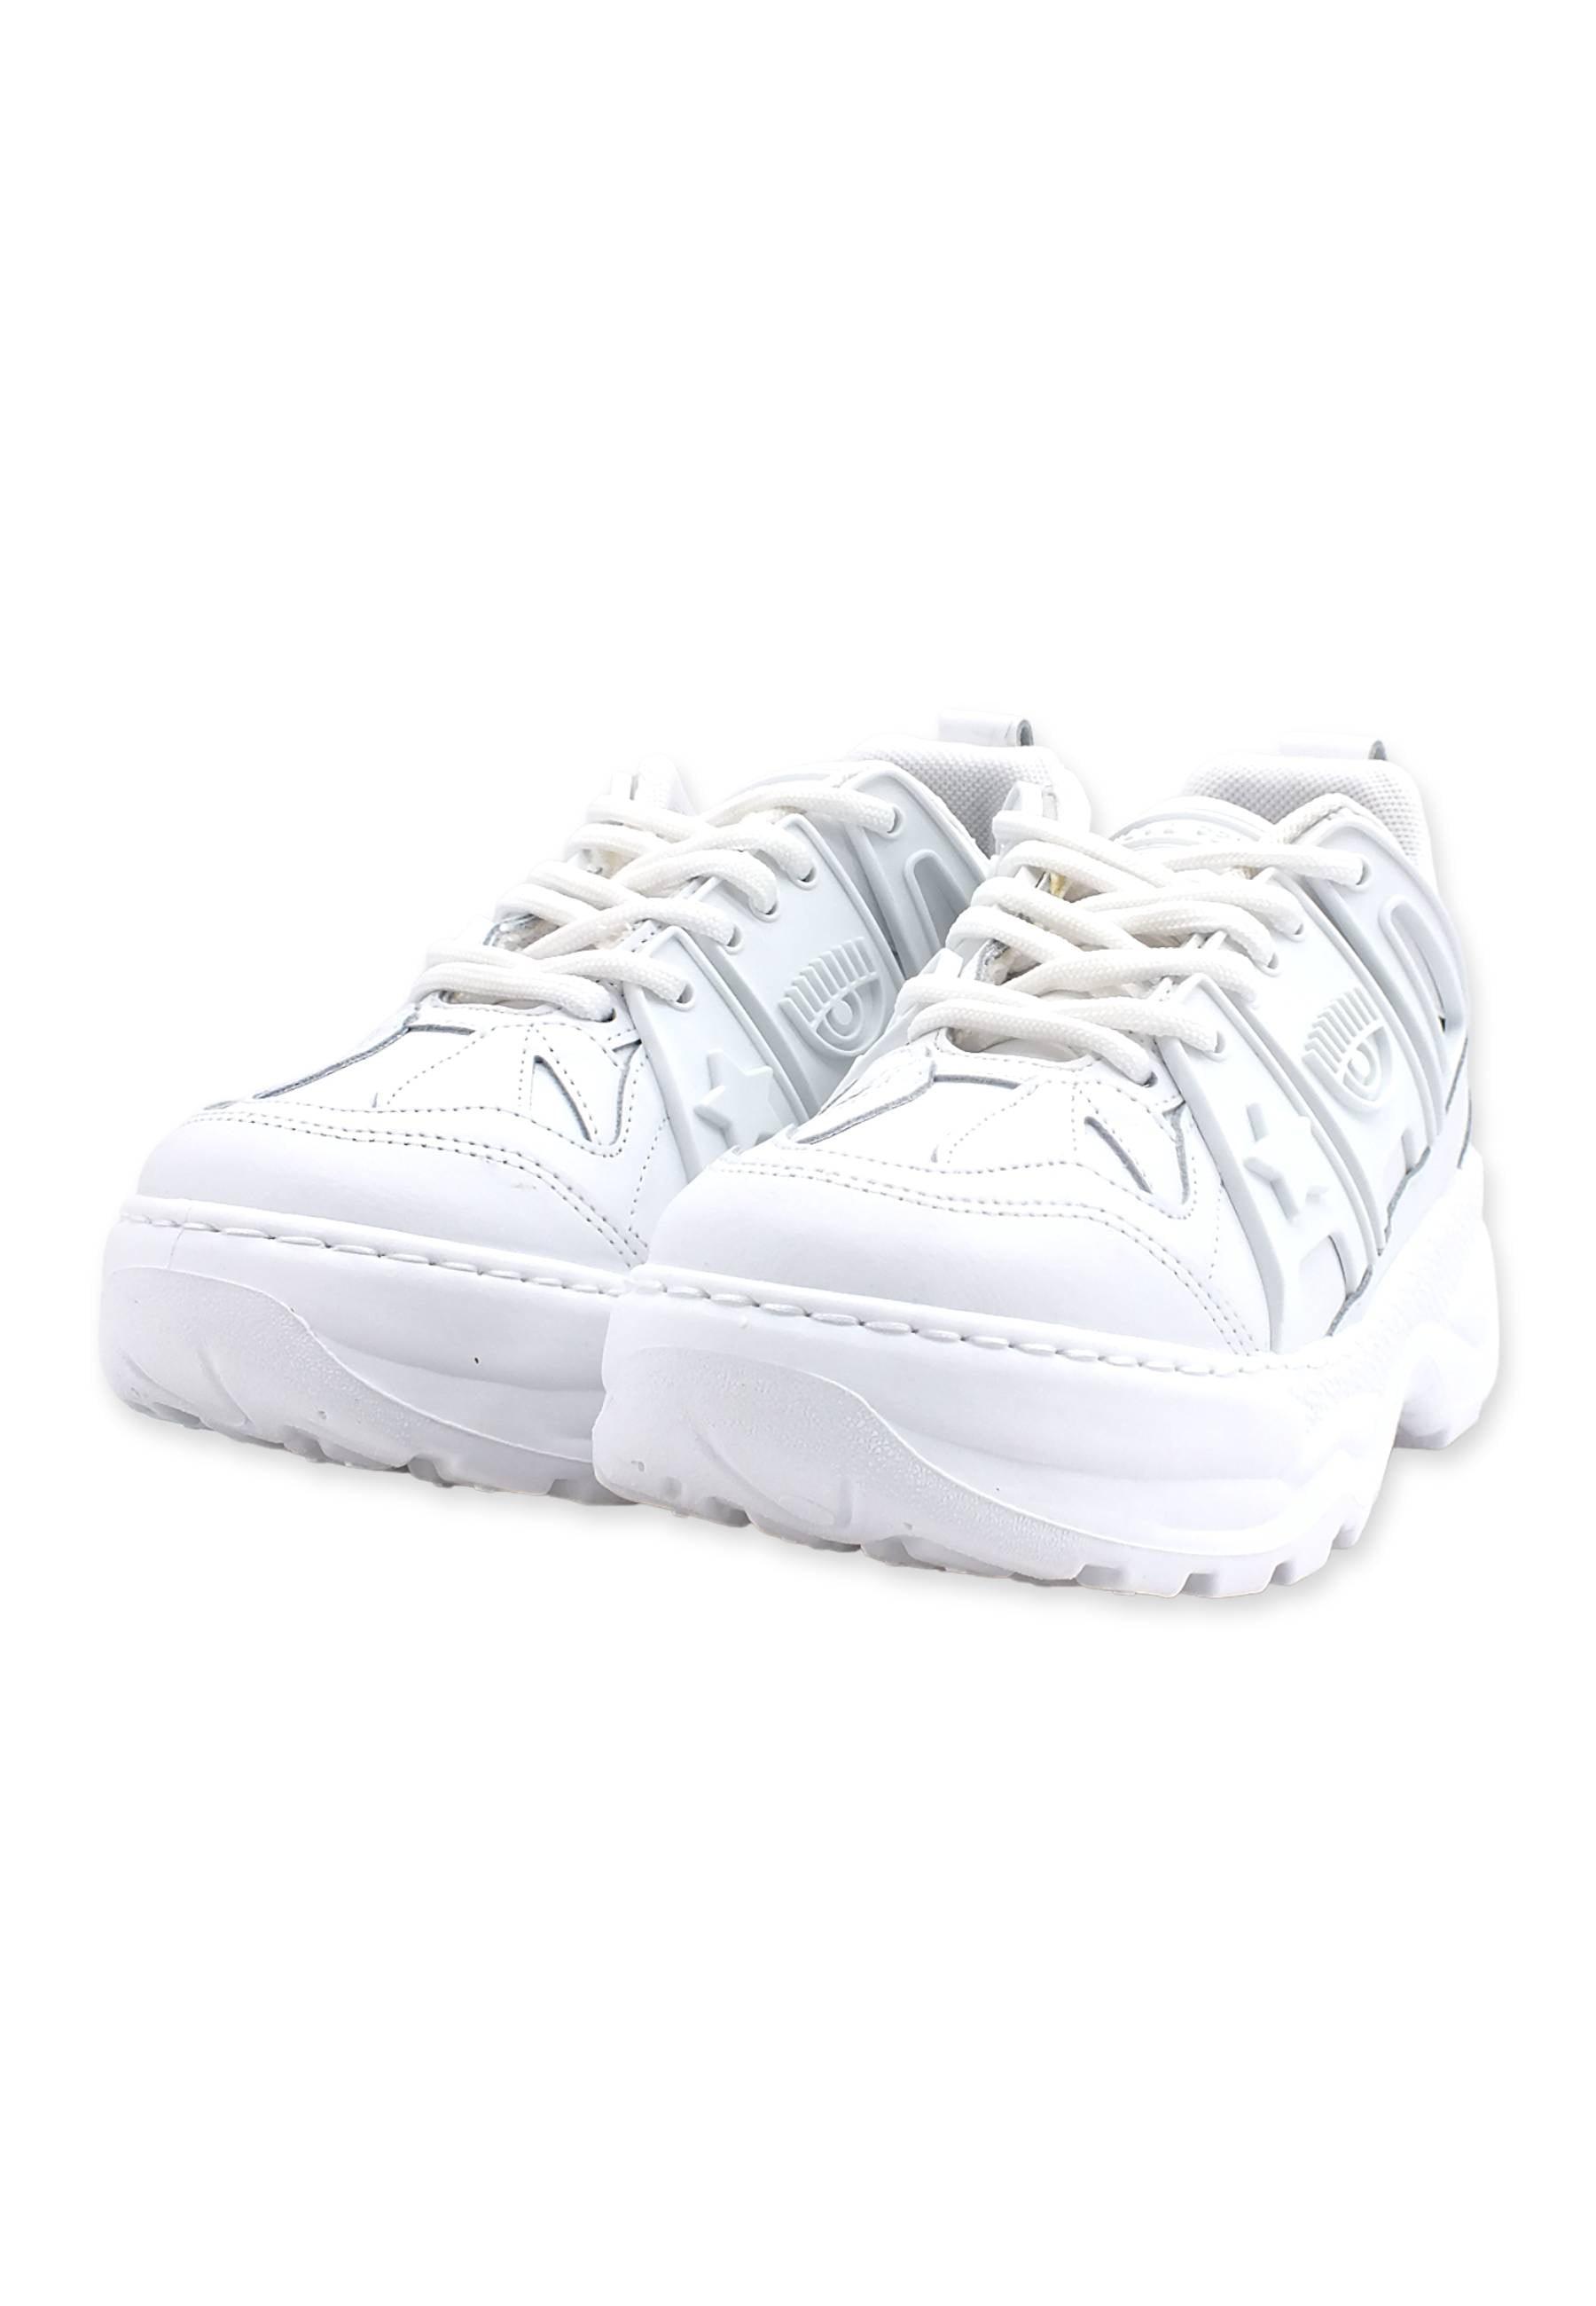 CHIARA FERRAGNI Eye Fly Sneaker Donna White CF3000-009 - Sandrini Calzature e Abbigliamento